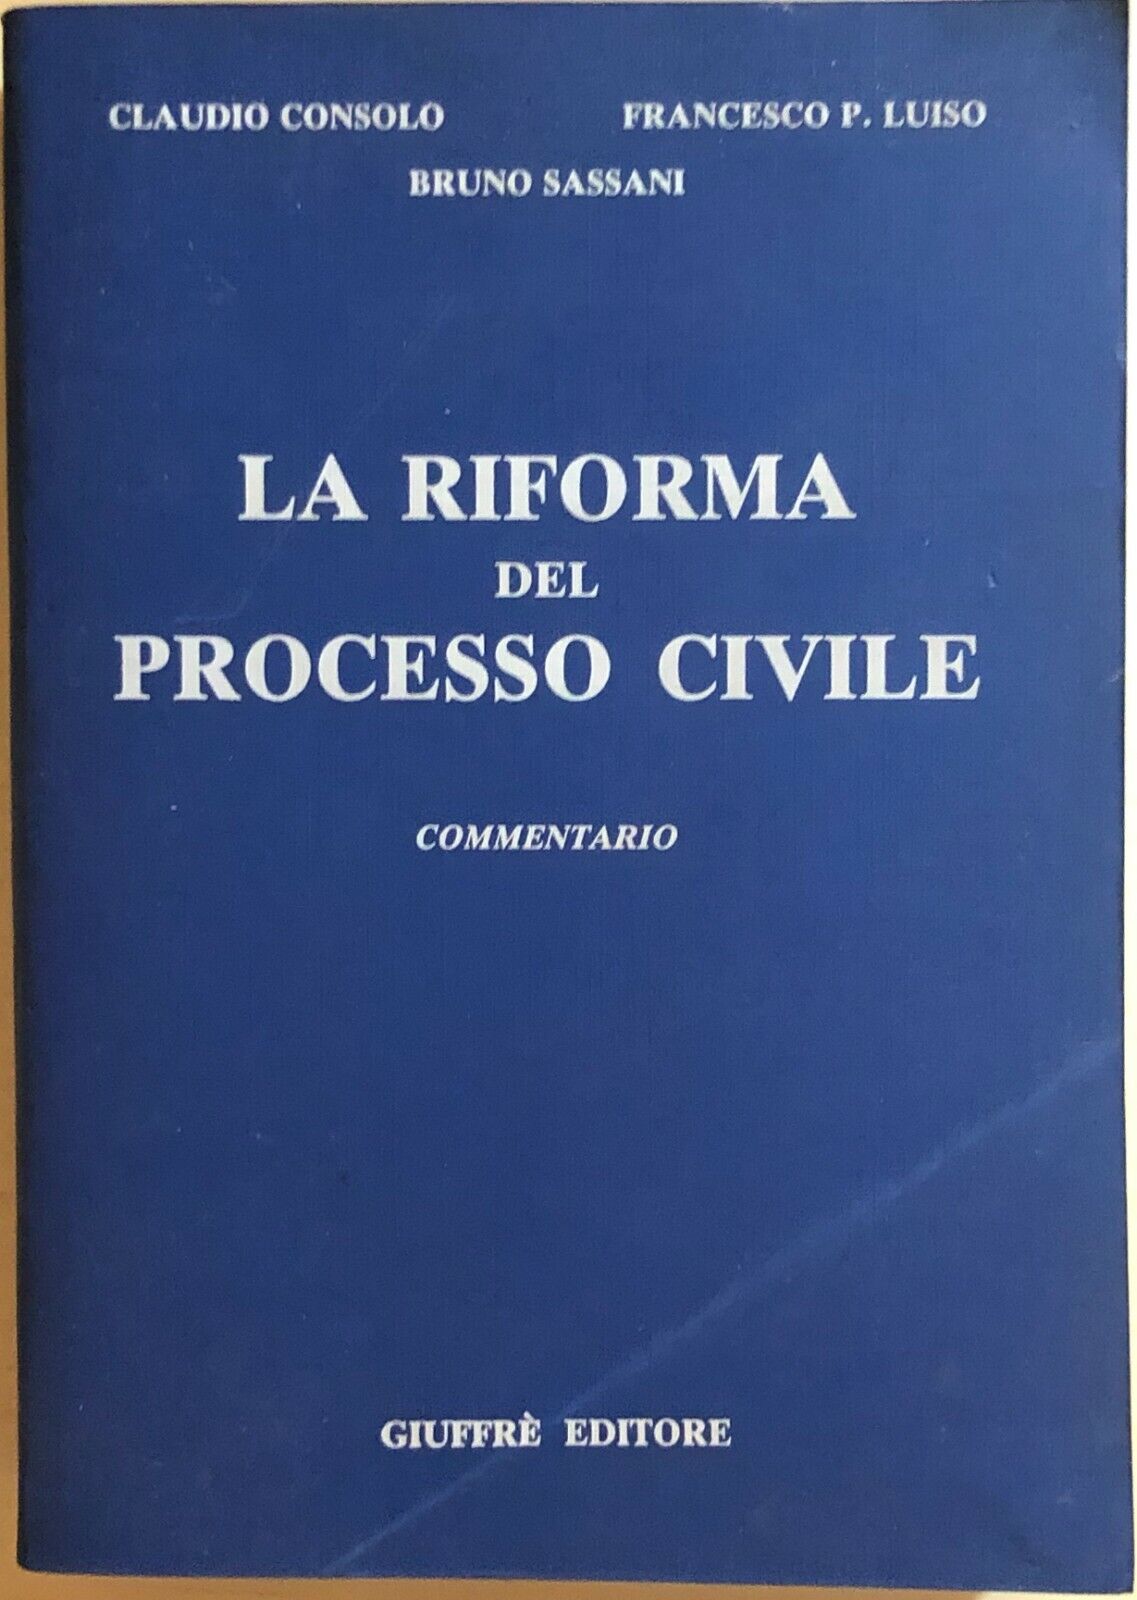 La riforma del processo civile di AA.VV., 1991, Giuffr? editore